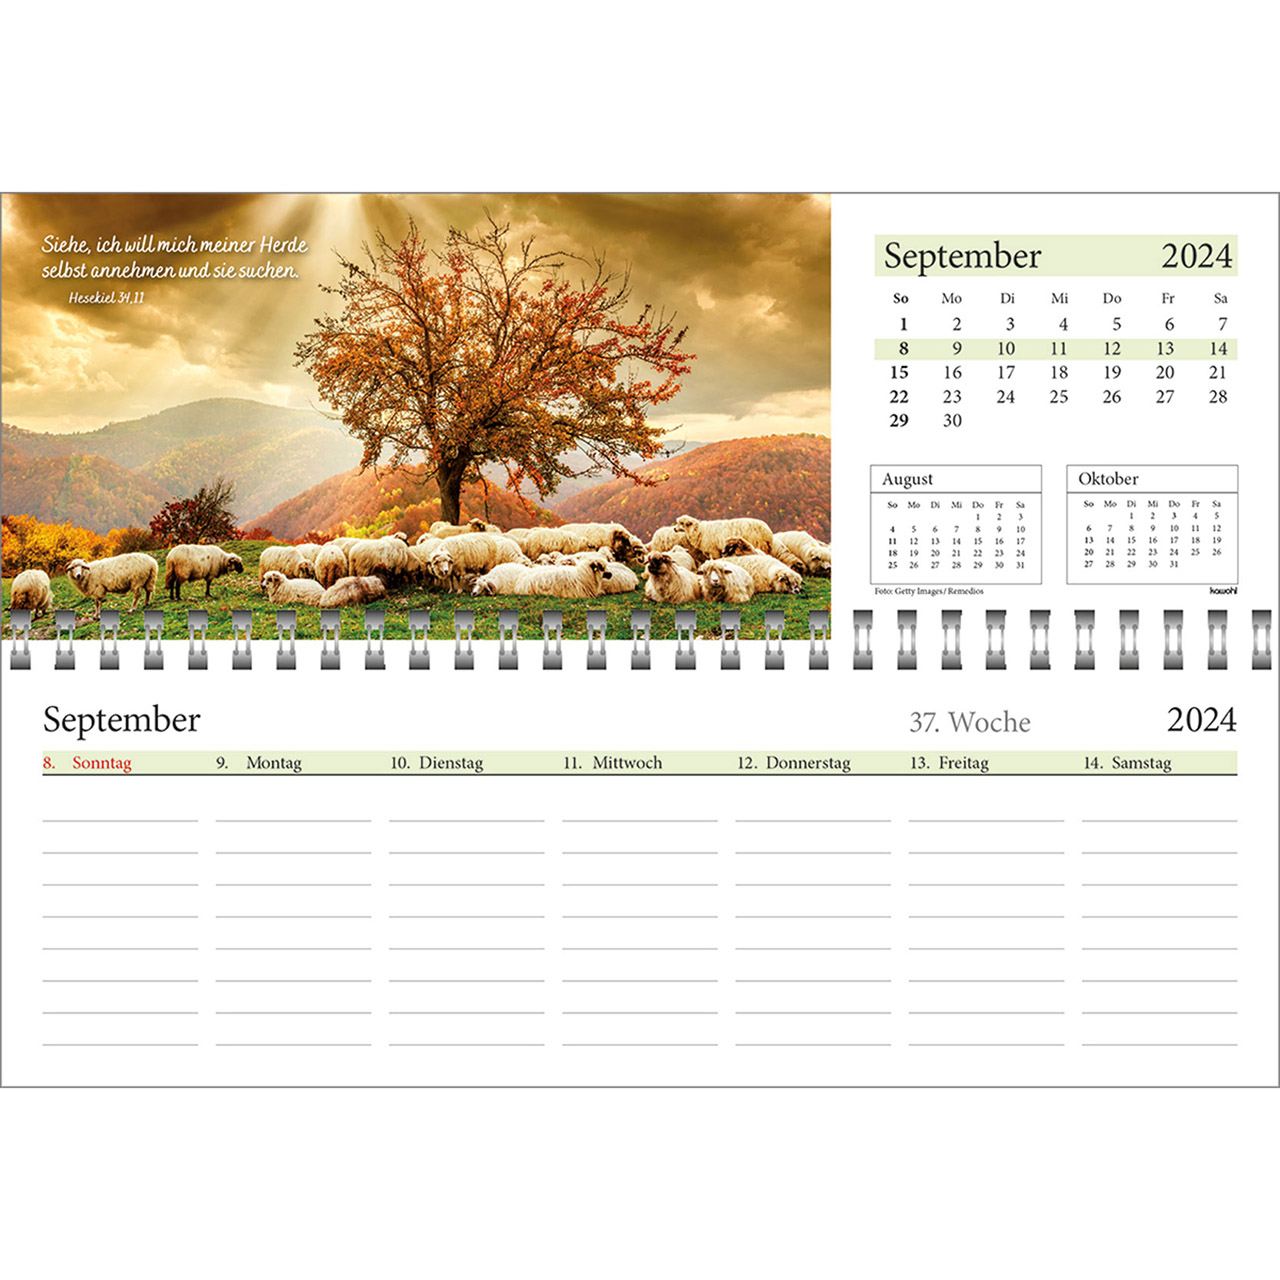 Tischkalender 2024 - In deine Hand leg ich den Tag